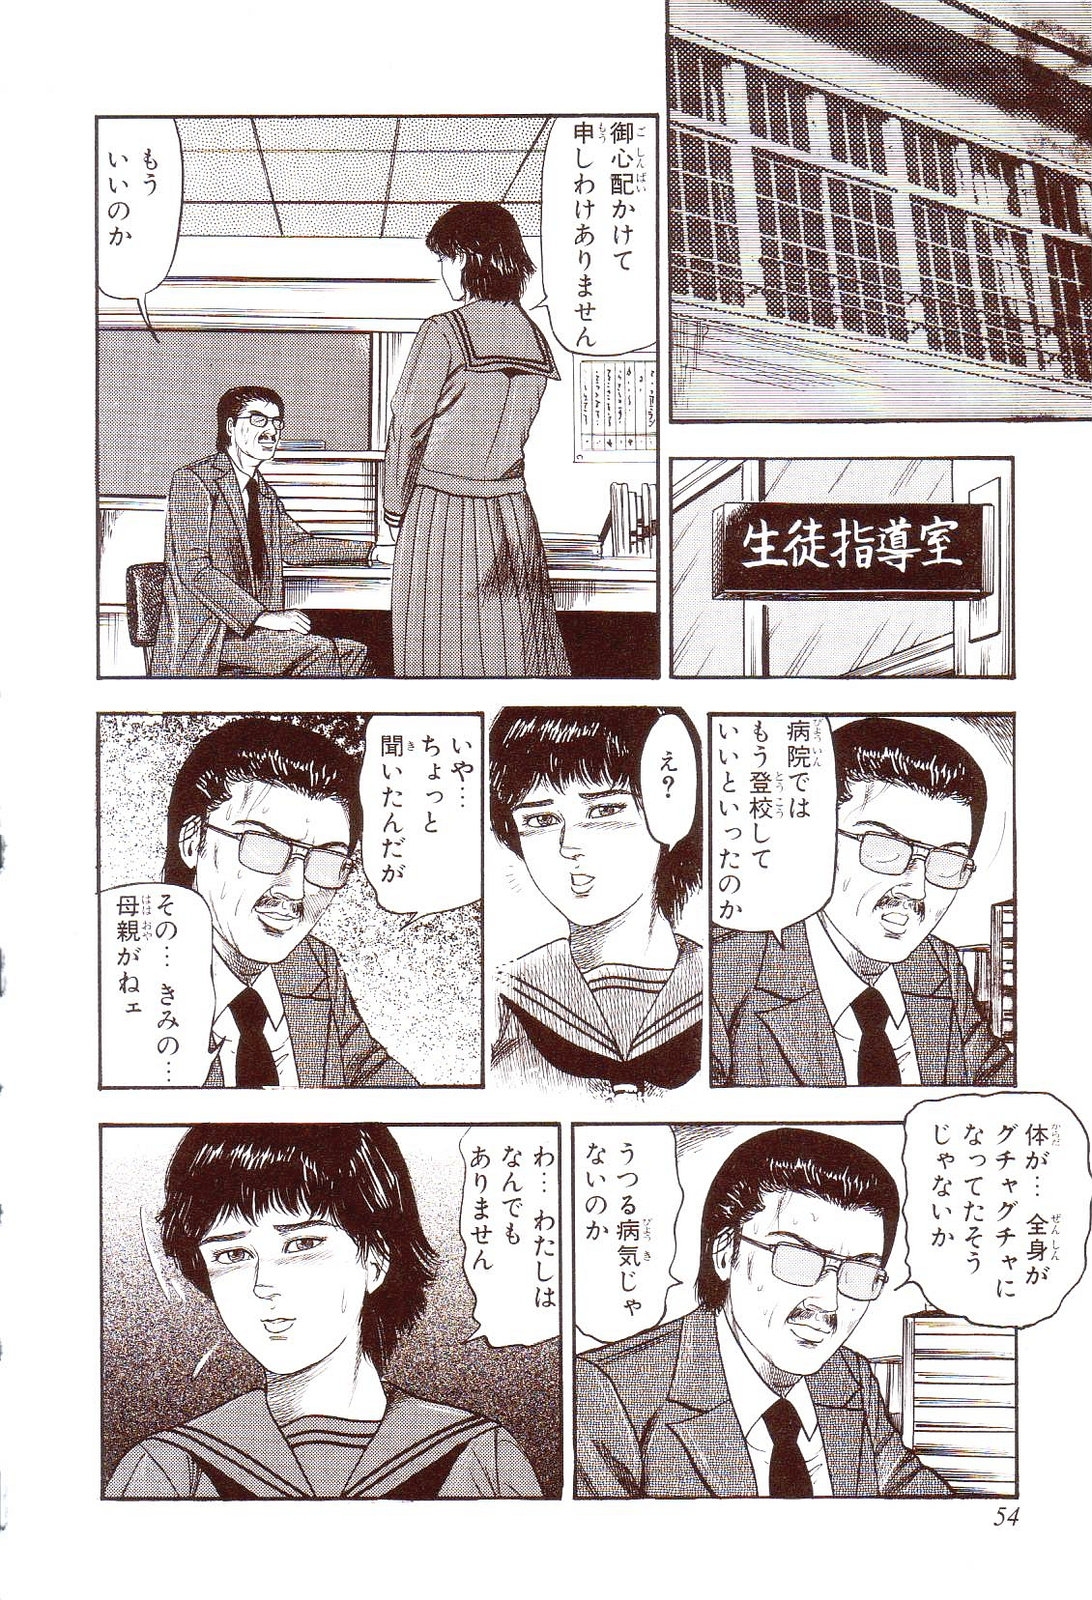 [Sanjou Tomomi] Inu ni Naritai -kyoufu manga shugyoku sakuhinshiyuu- 58